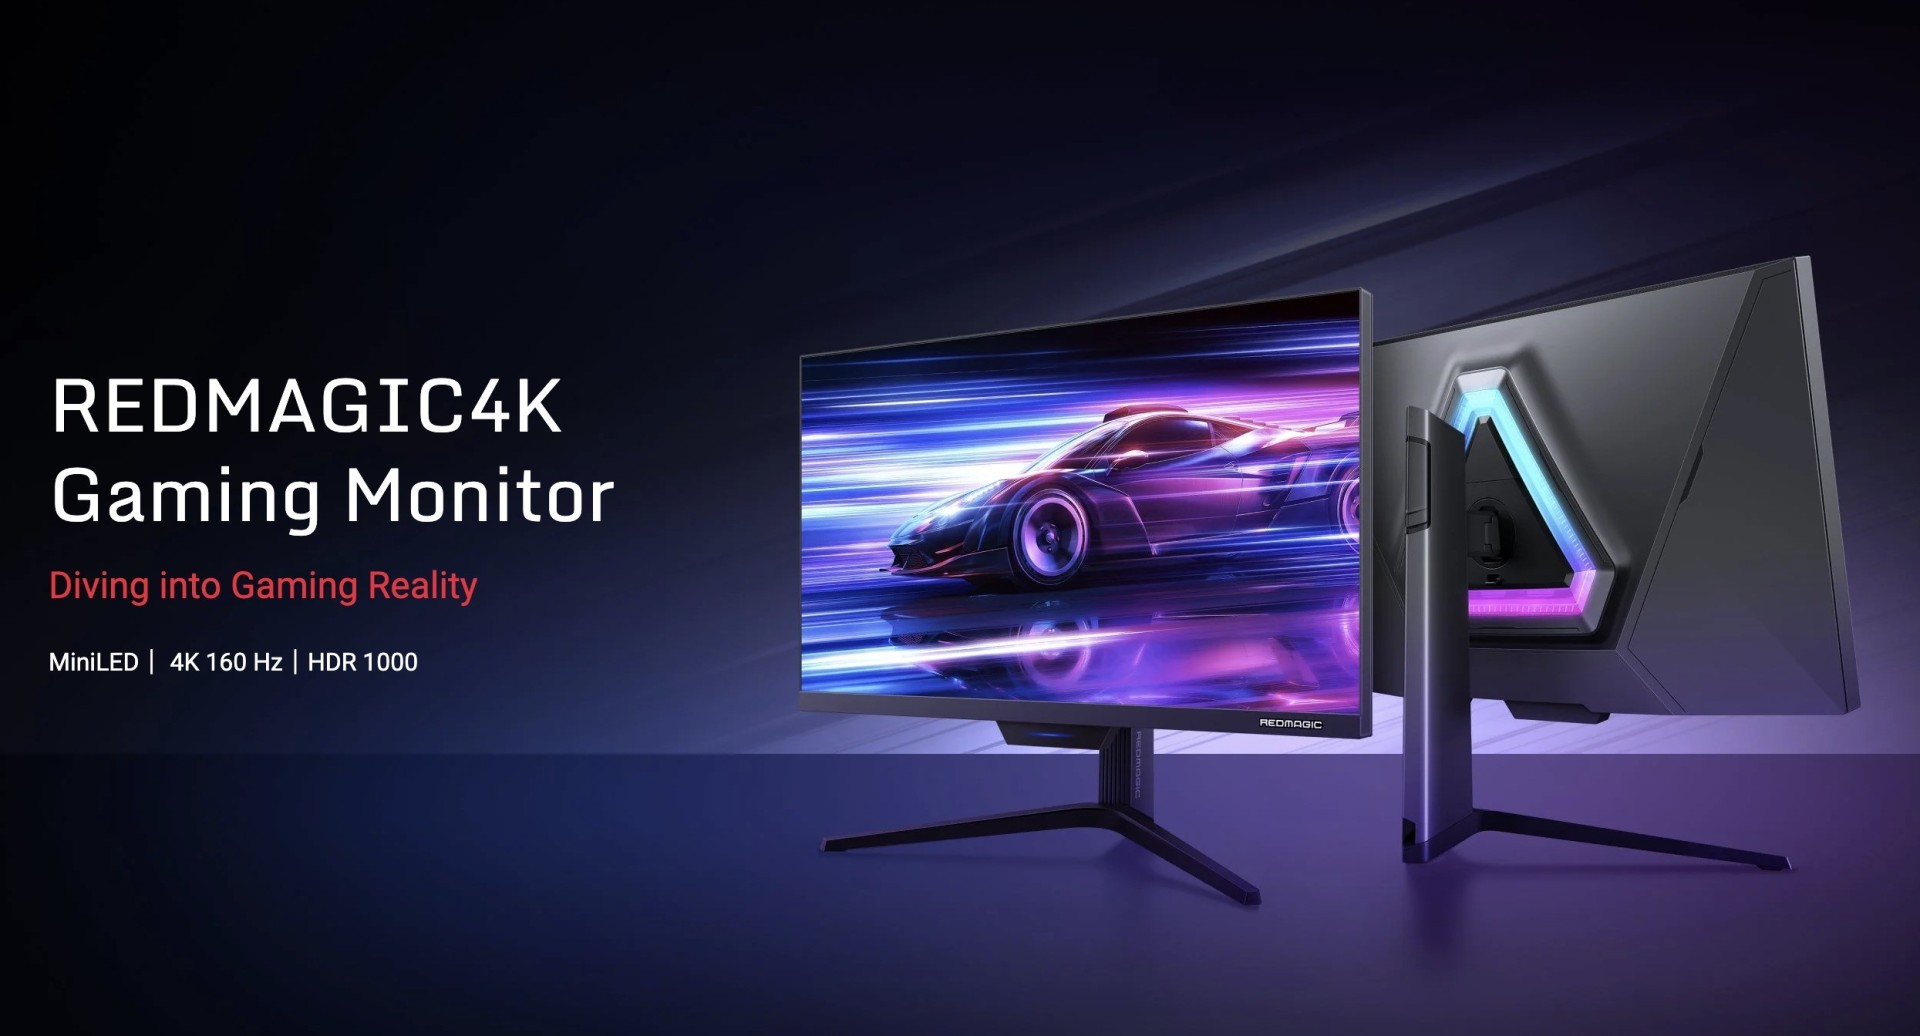 redmagic 4k gaming monitor